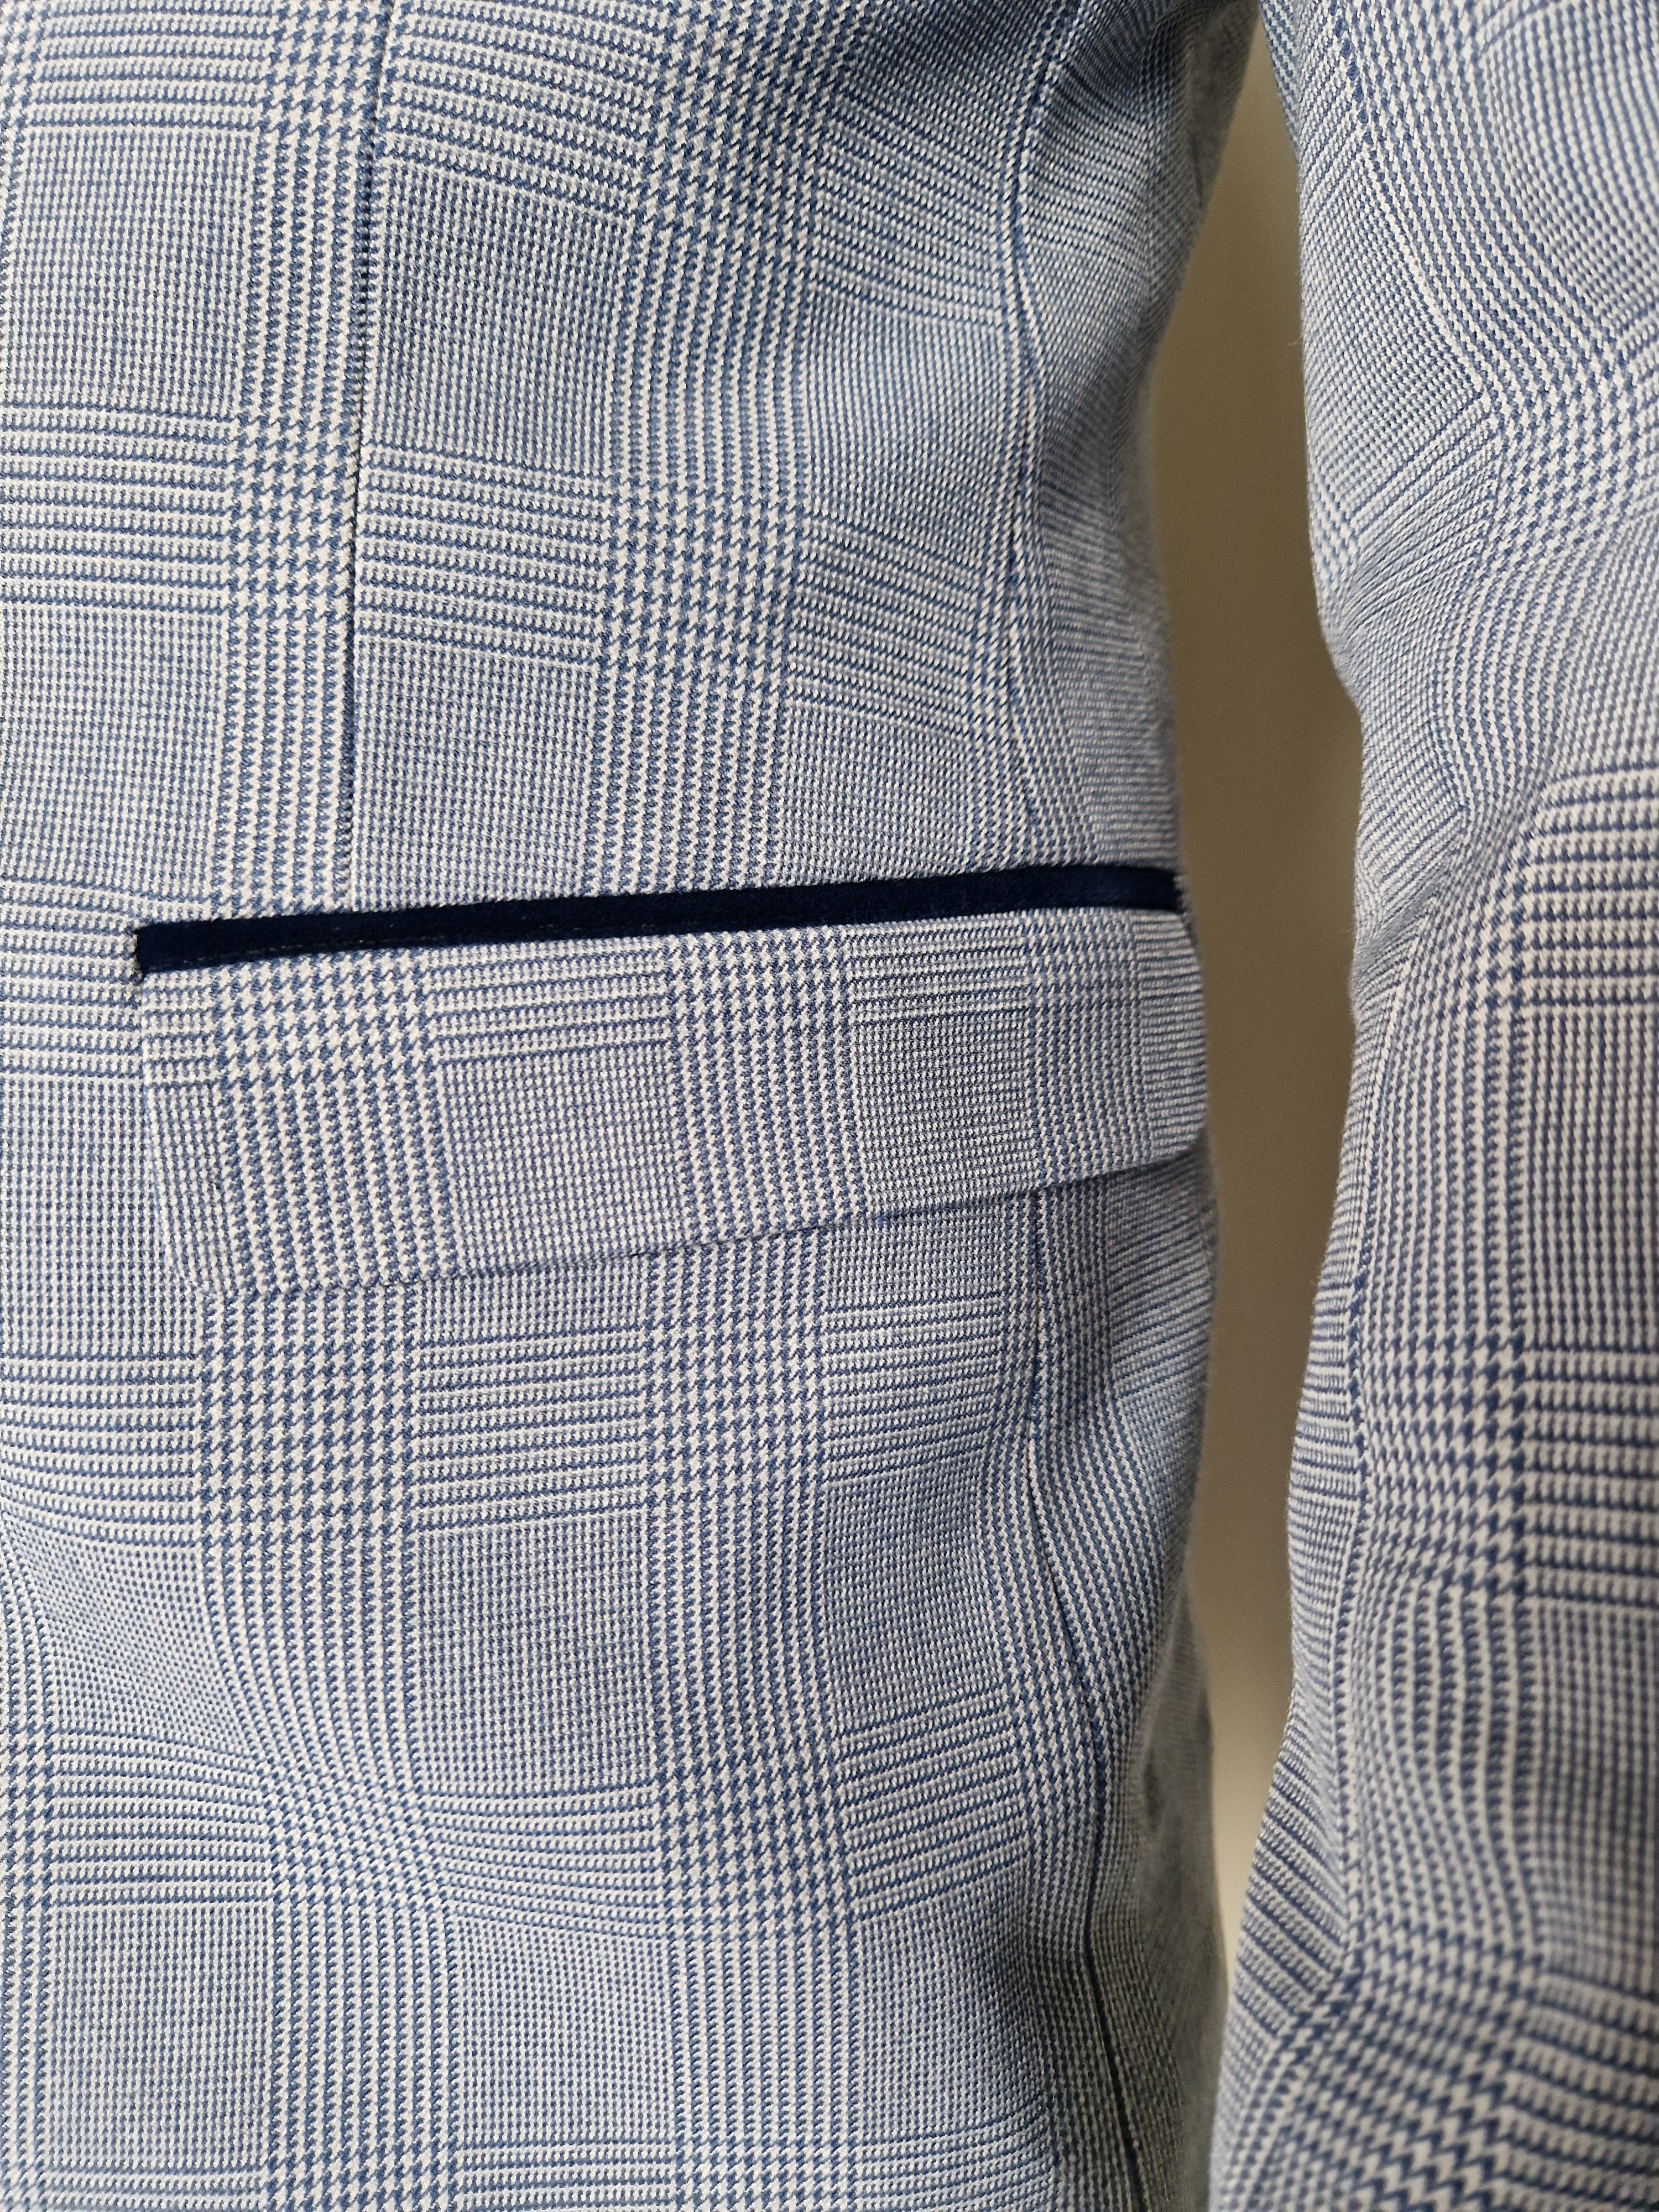 3-delt blå herre skjorte med rutemønster - Marc Darcy Bromley Sky suit.